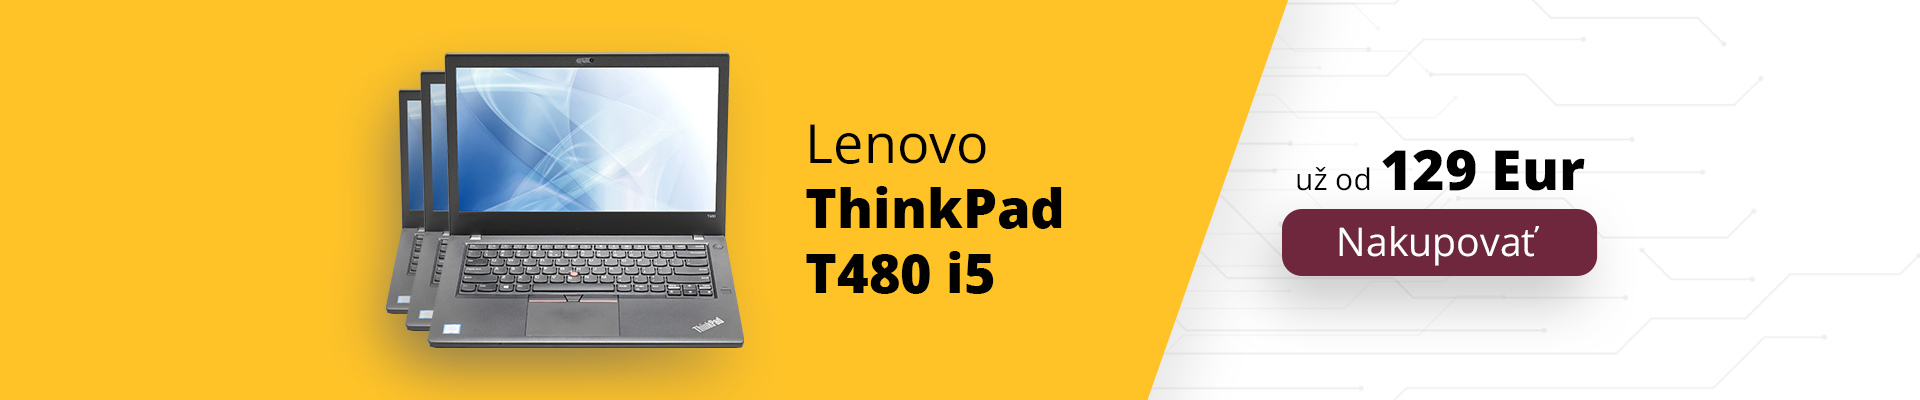 Lenovo ThinkPad T480 akcia